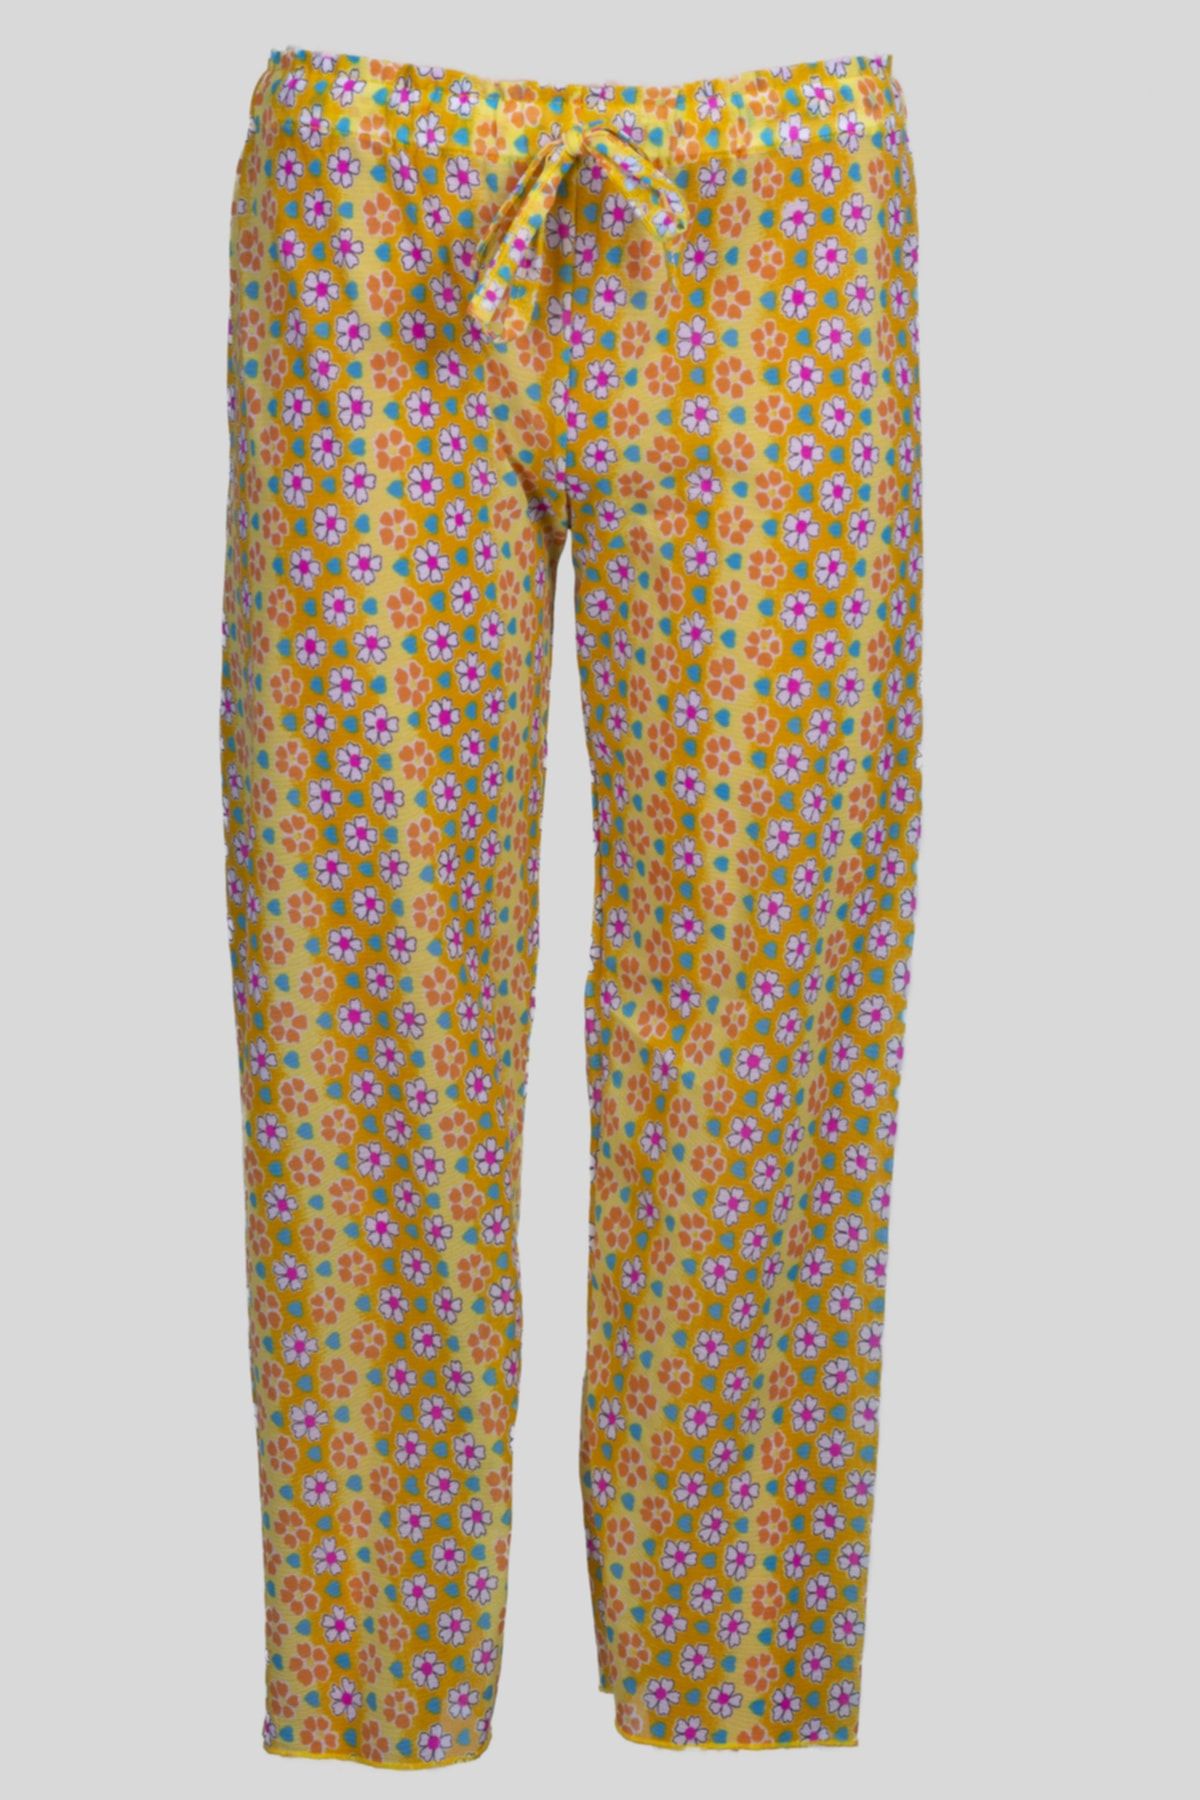 Sude Ayl Kız Çocuk Kk.sarı Kelebek Ve Çiçek Desenli Belden Bağlamalı Tül Deniz Pantolonu 168-32